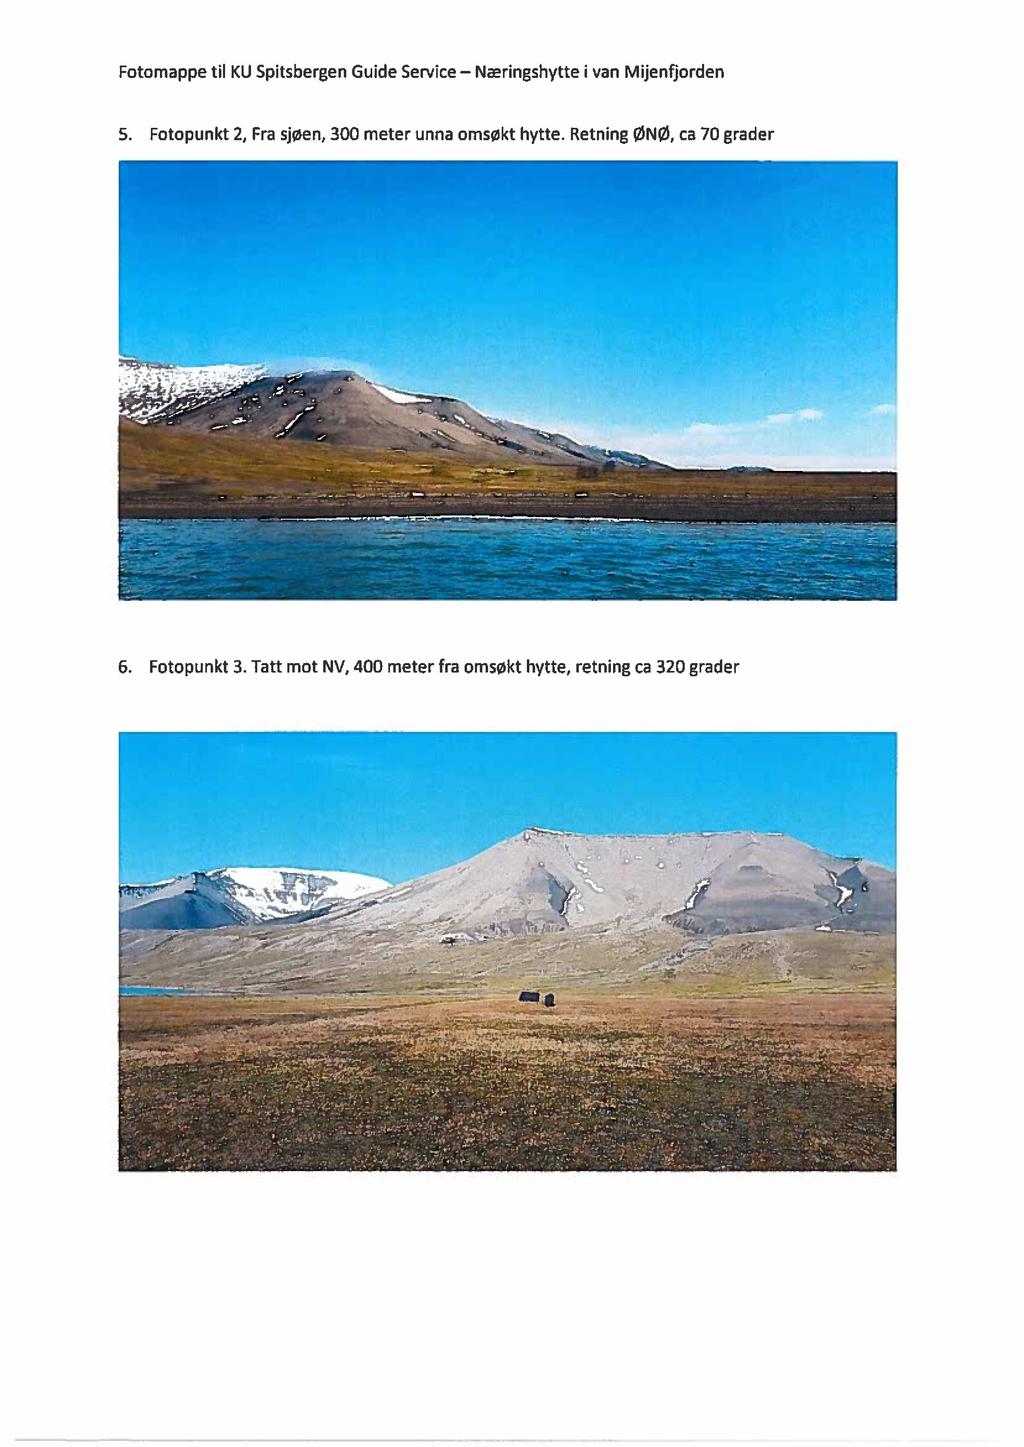 Fotomappe til KU Spitsbergen Guide Service - Naeringshytte i van Mijenfiorden 5. Fotopunkt 2, Fra sjøen, 300 meter unna omsøkt hytte. Retning ØNØ, ca 70 grader..... --». " ".